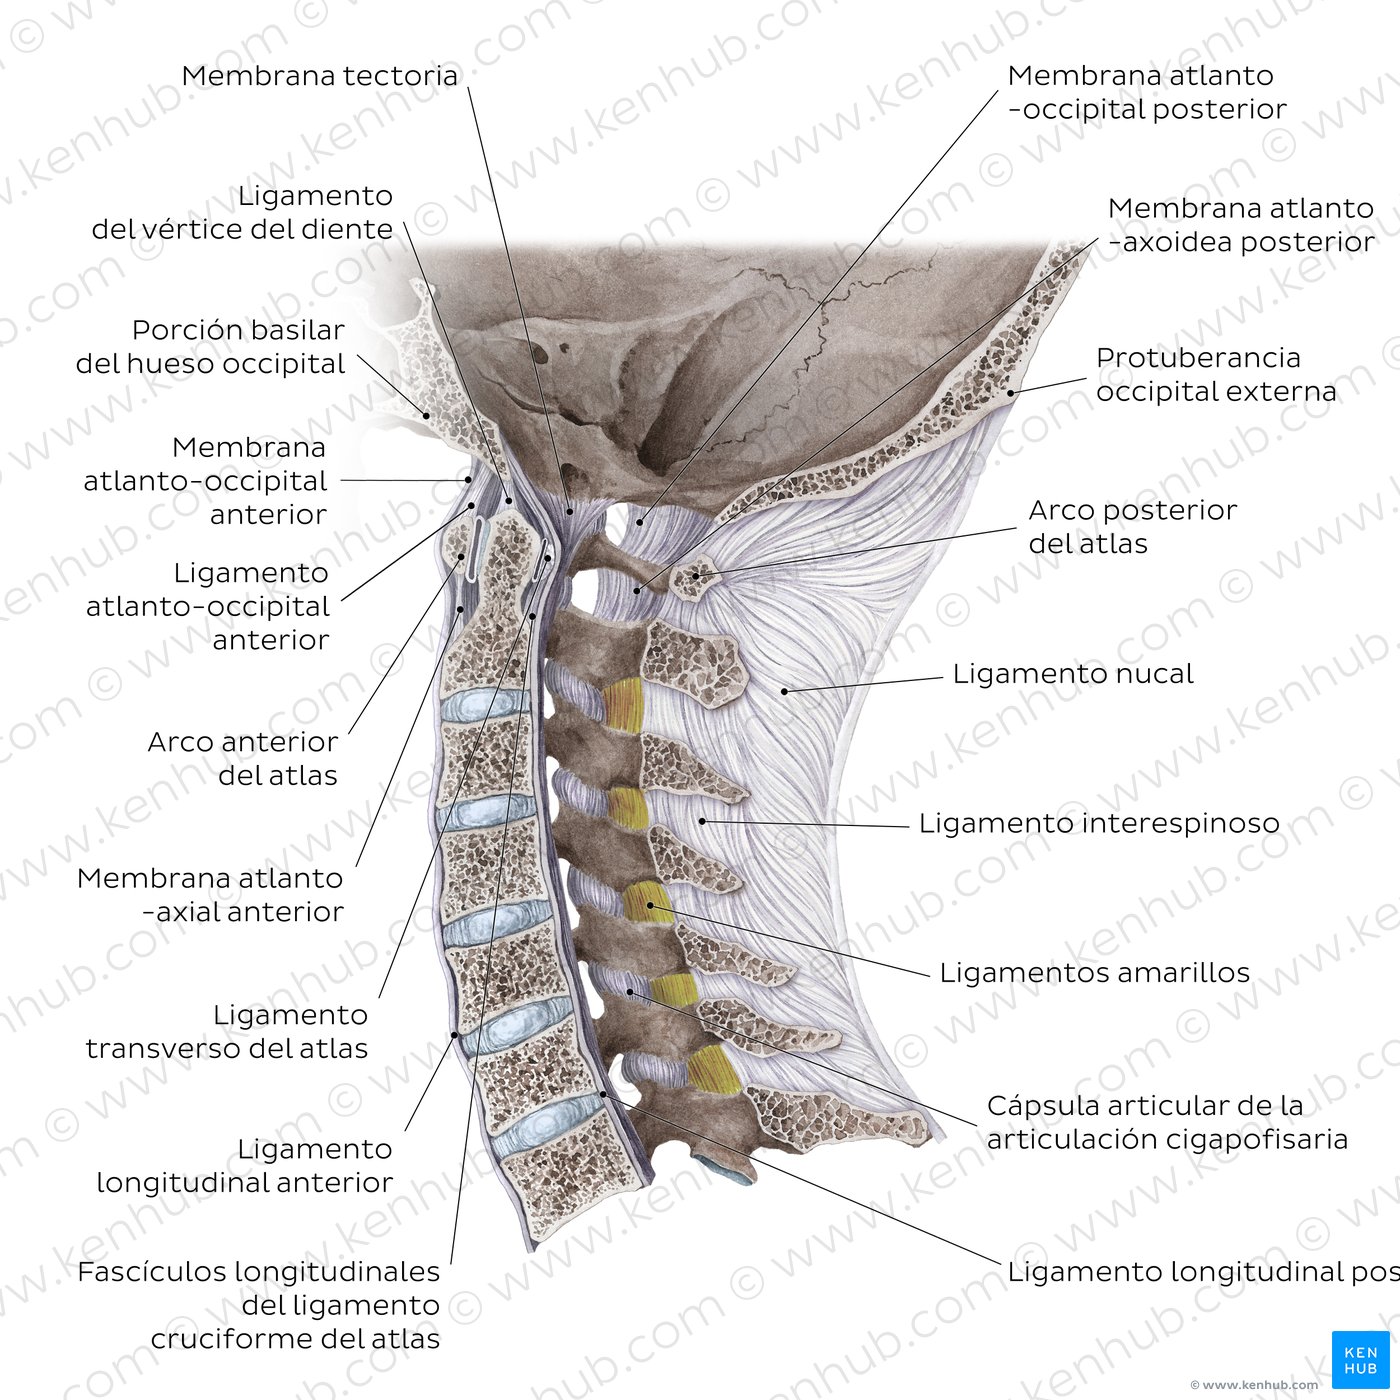 Articulaciones craneovertebrales y ligamentos